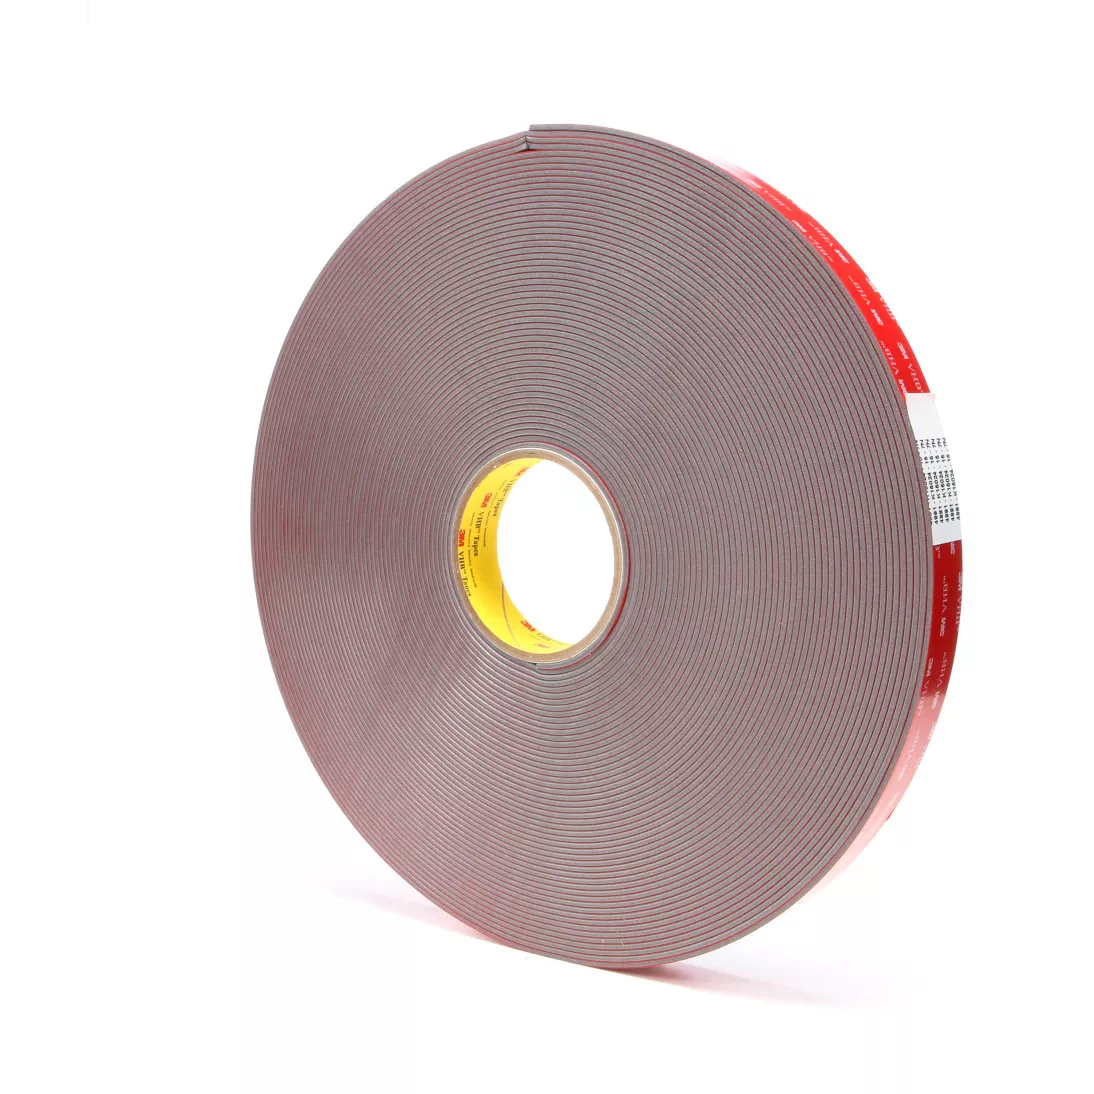 3M™ VHB™ Tape 4991, Gray, 1 in x 36 yd, 90 mil, 9 rolls per case